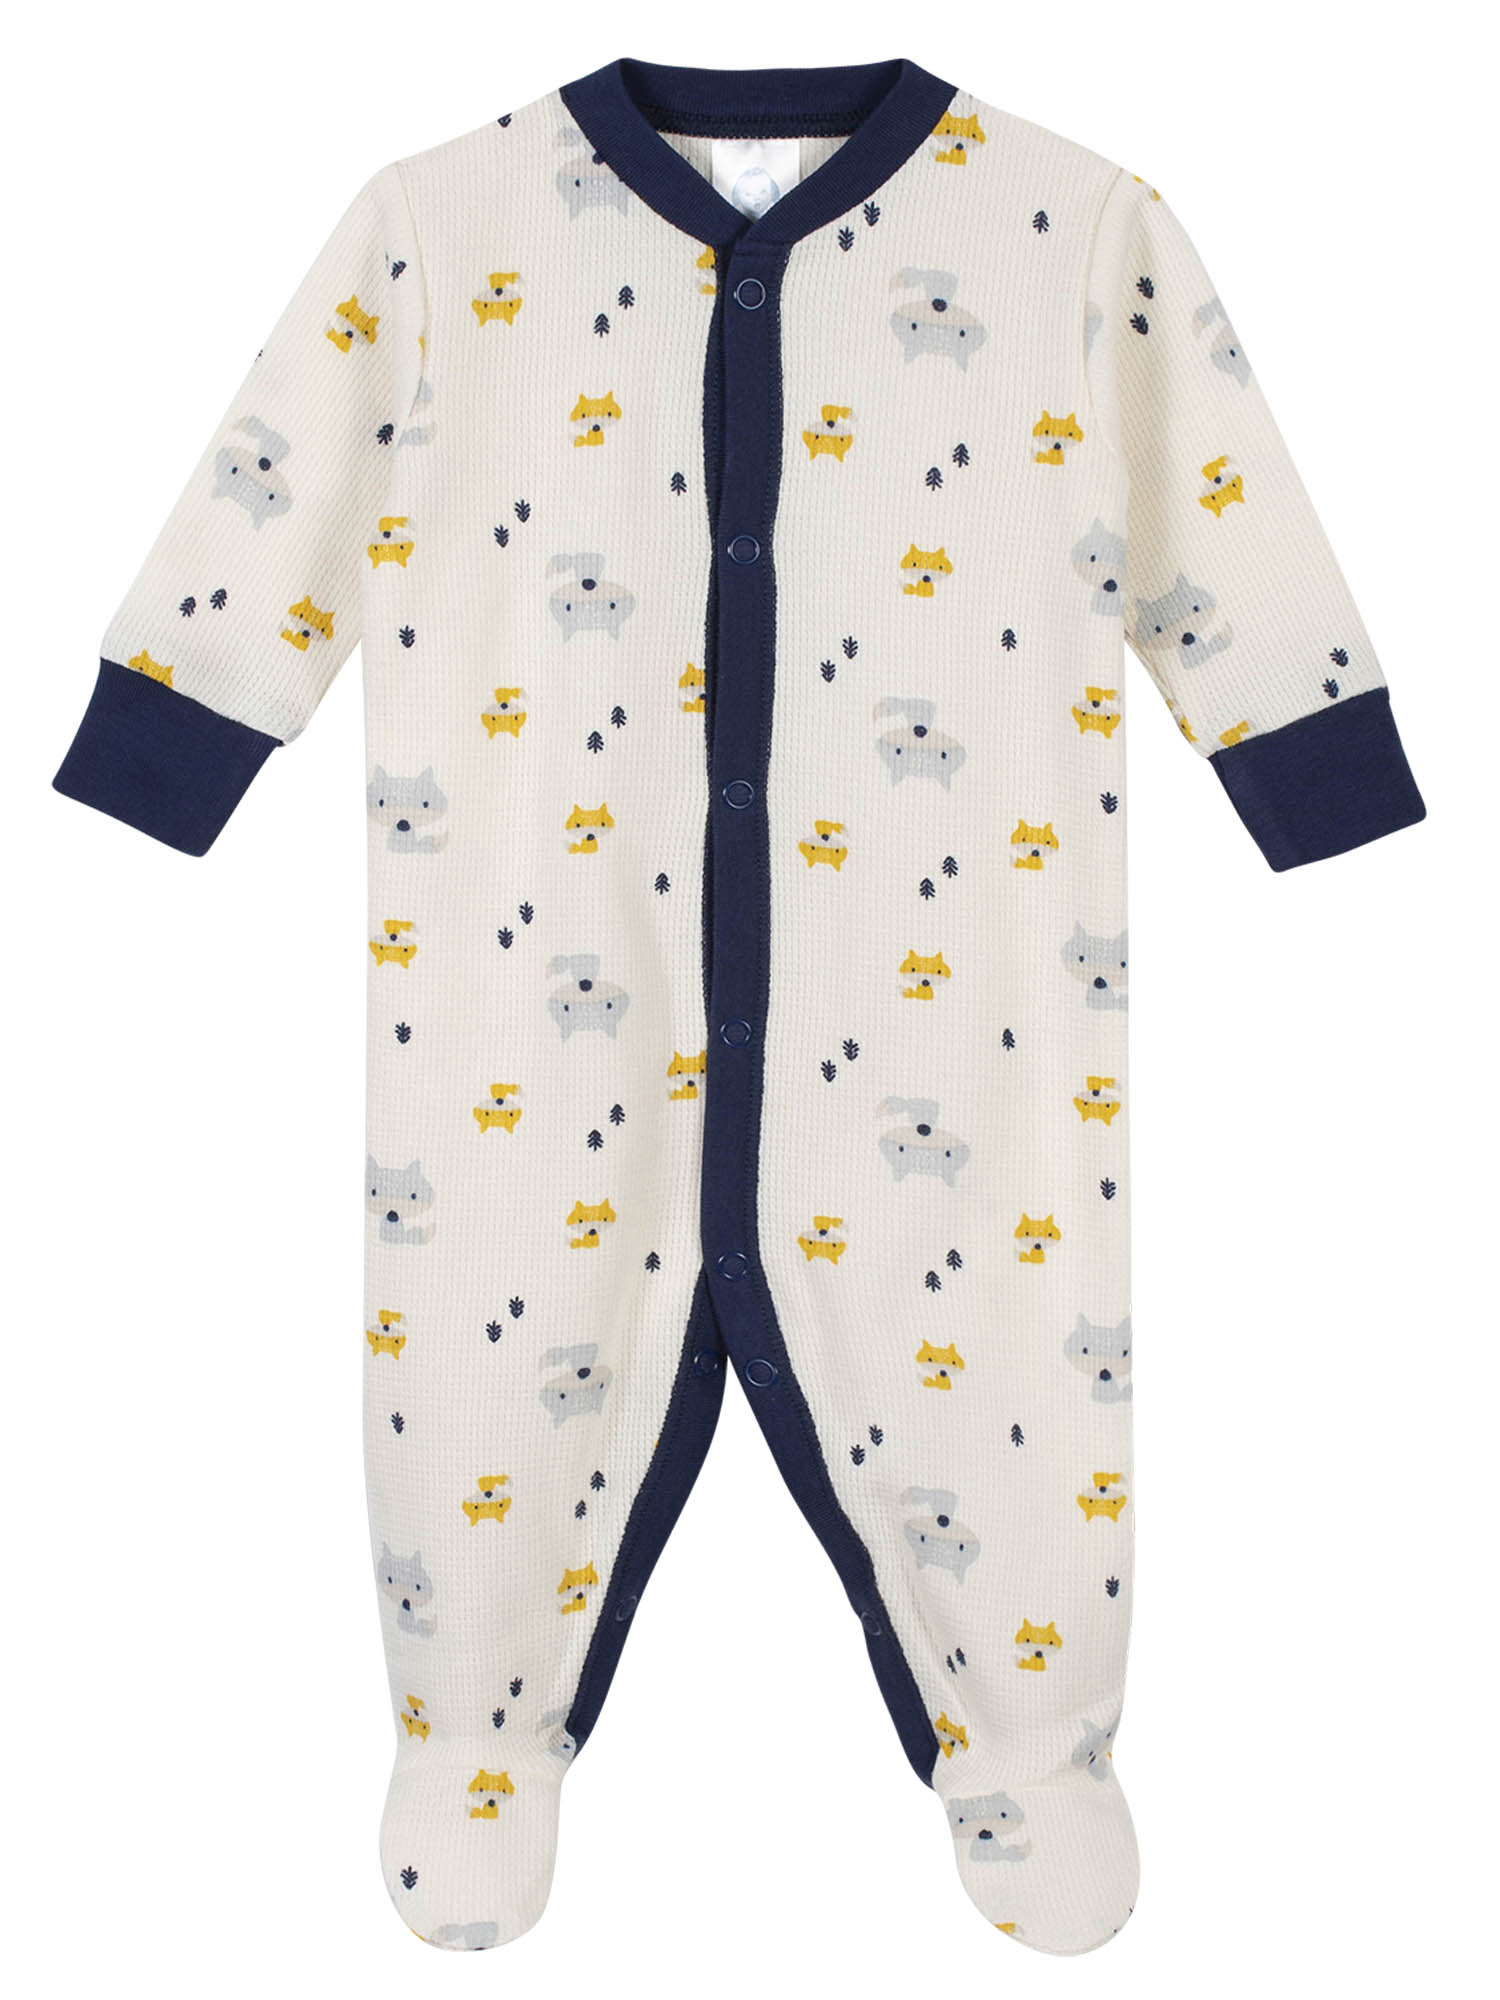 Gerber Baby Boy Thermal Footed Sleep 'N Play Pajamas, 2-Pack - image 3 of 11